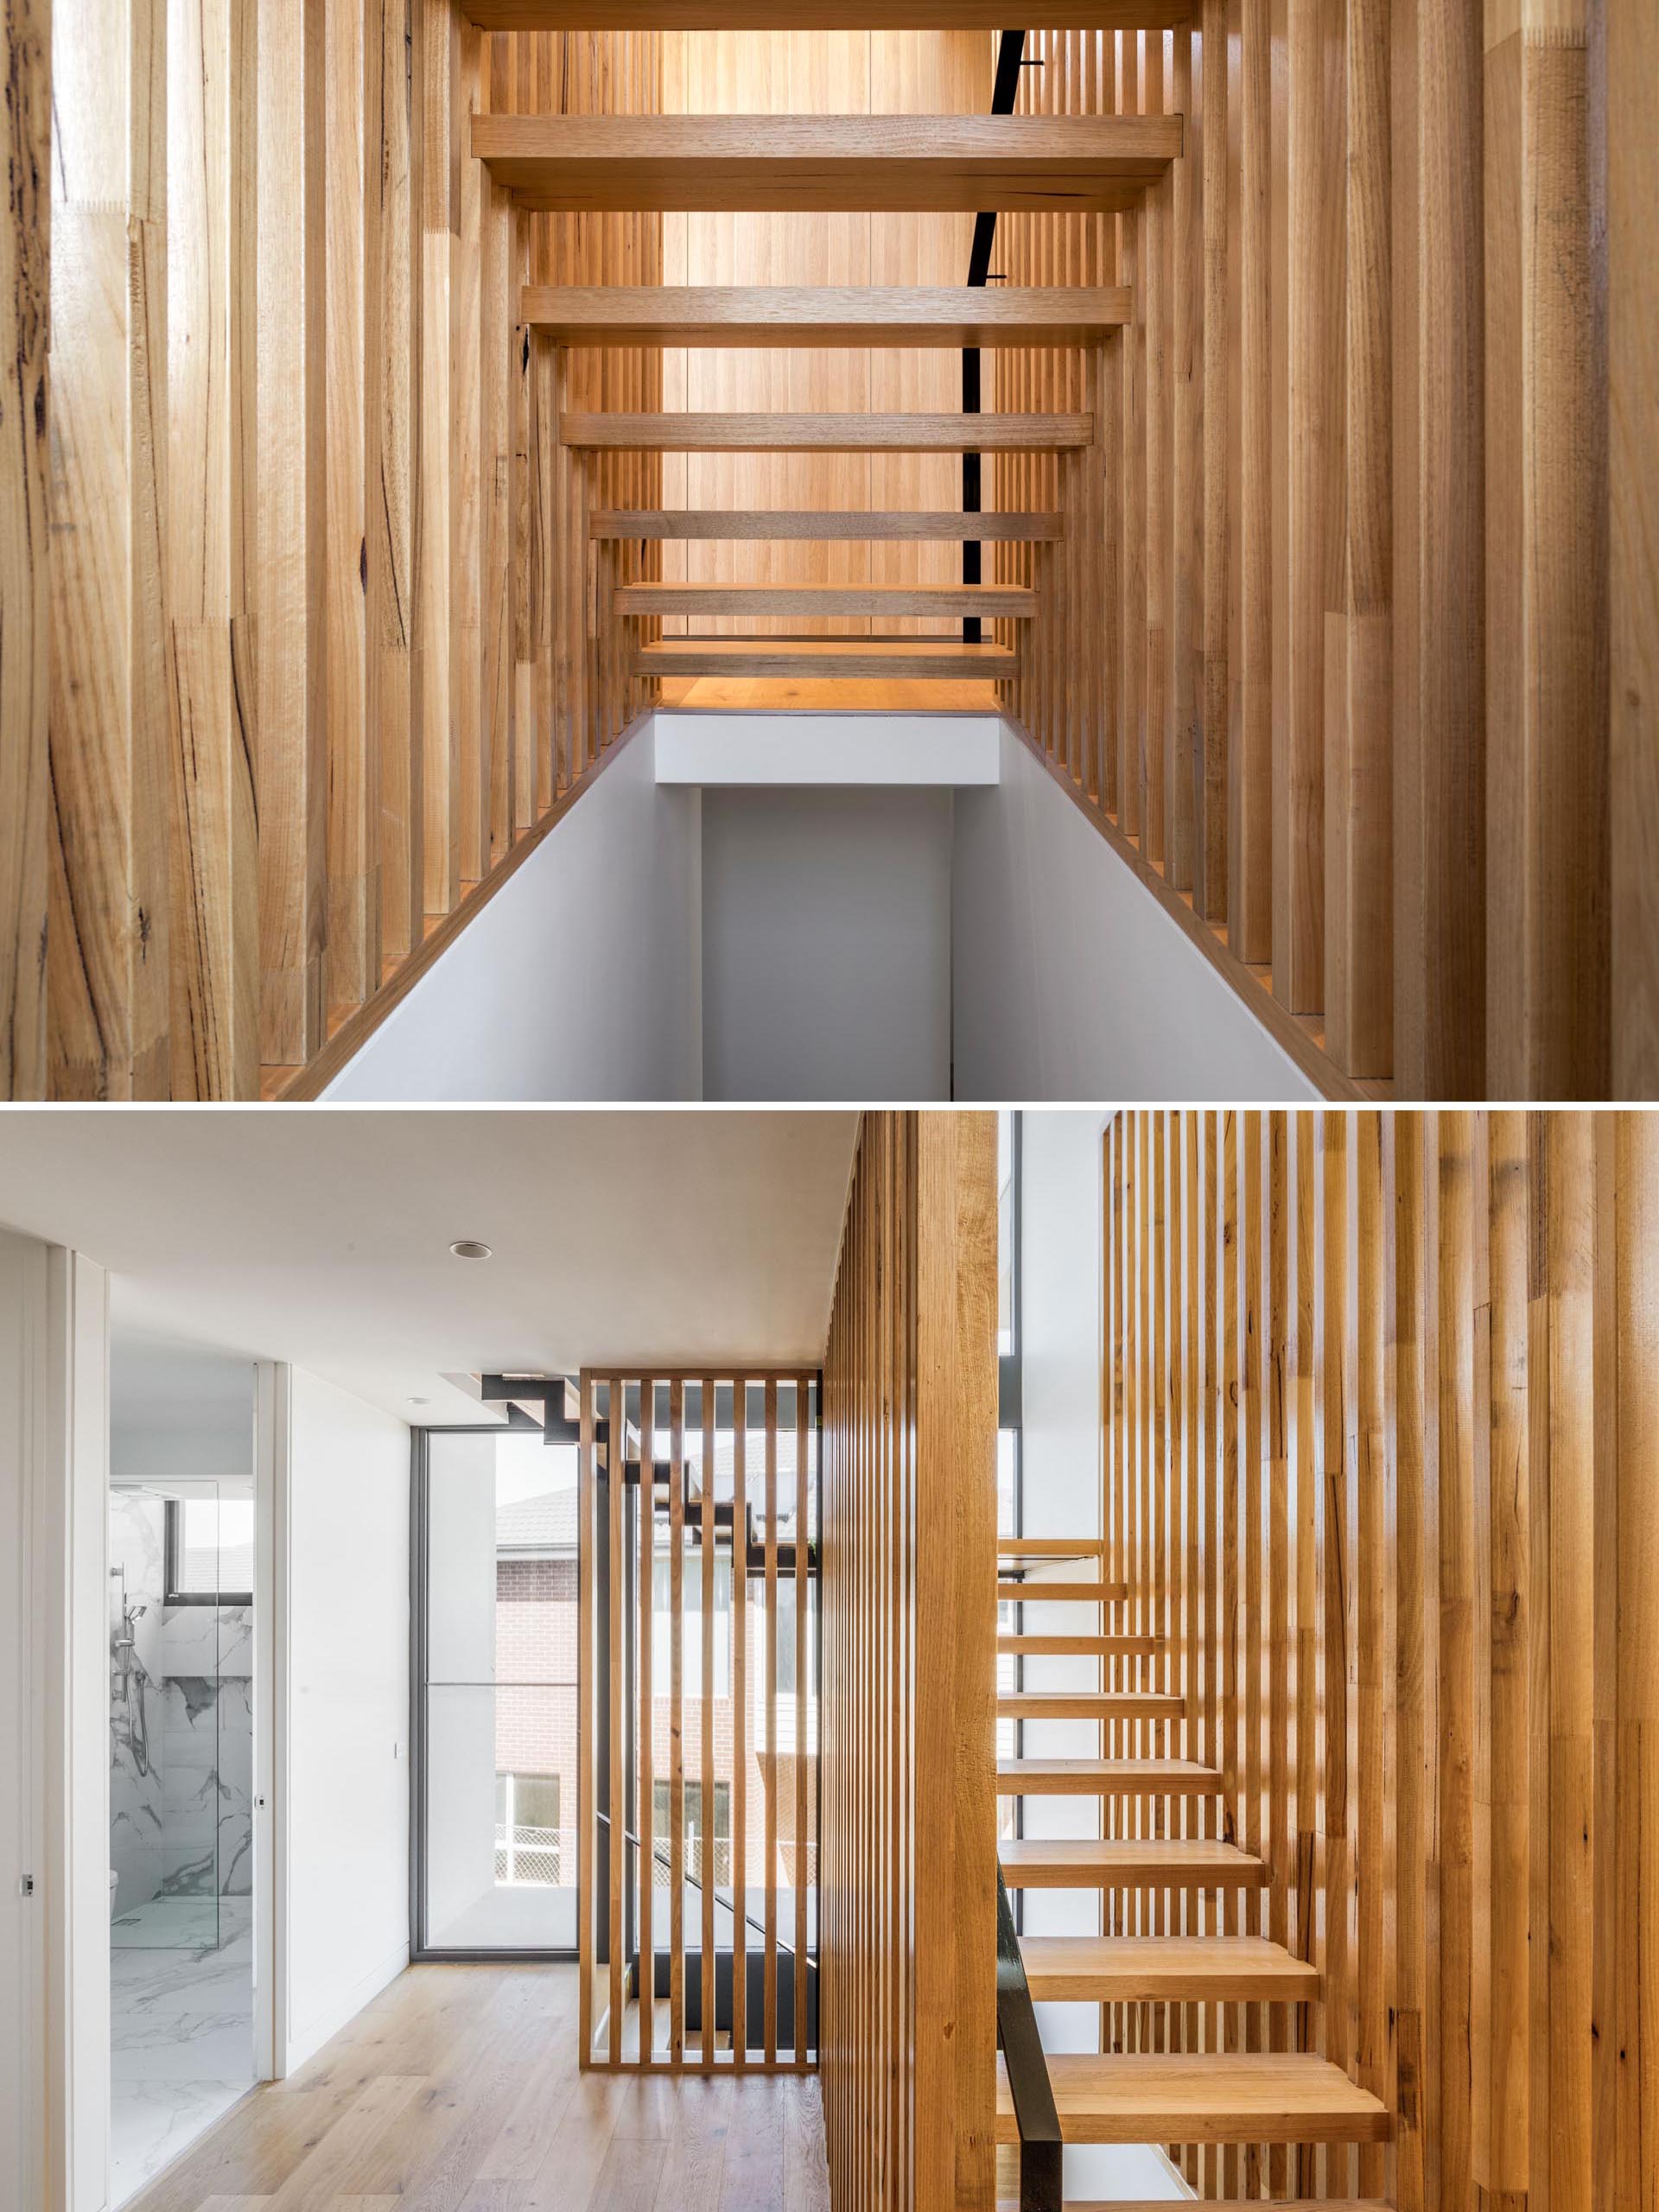 Cầu thang này có bậc cầu thang bằng gỗ chắc chắn nằm hoàn hảo giữa các thanh gỗ dọc dài mà không cần dây treo cầu thang.